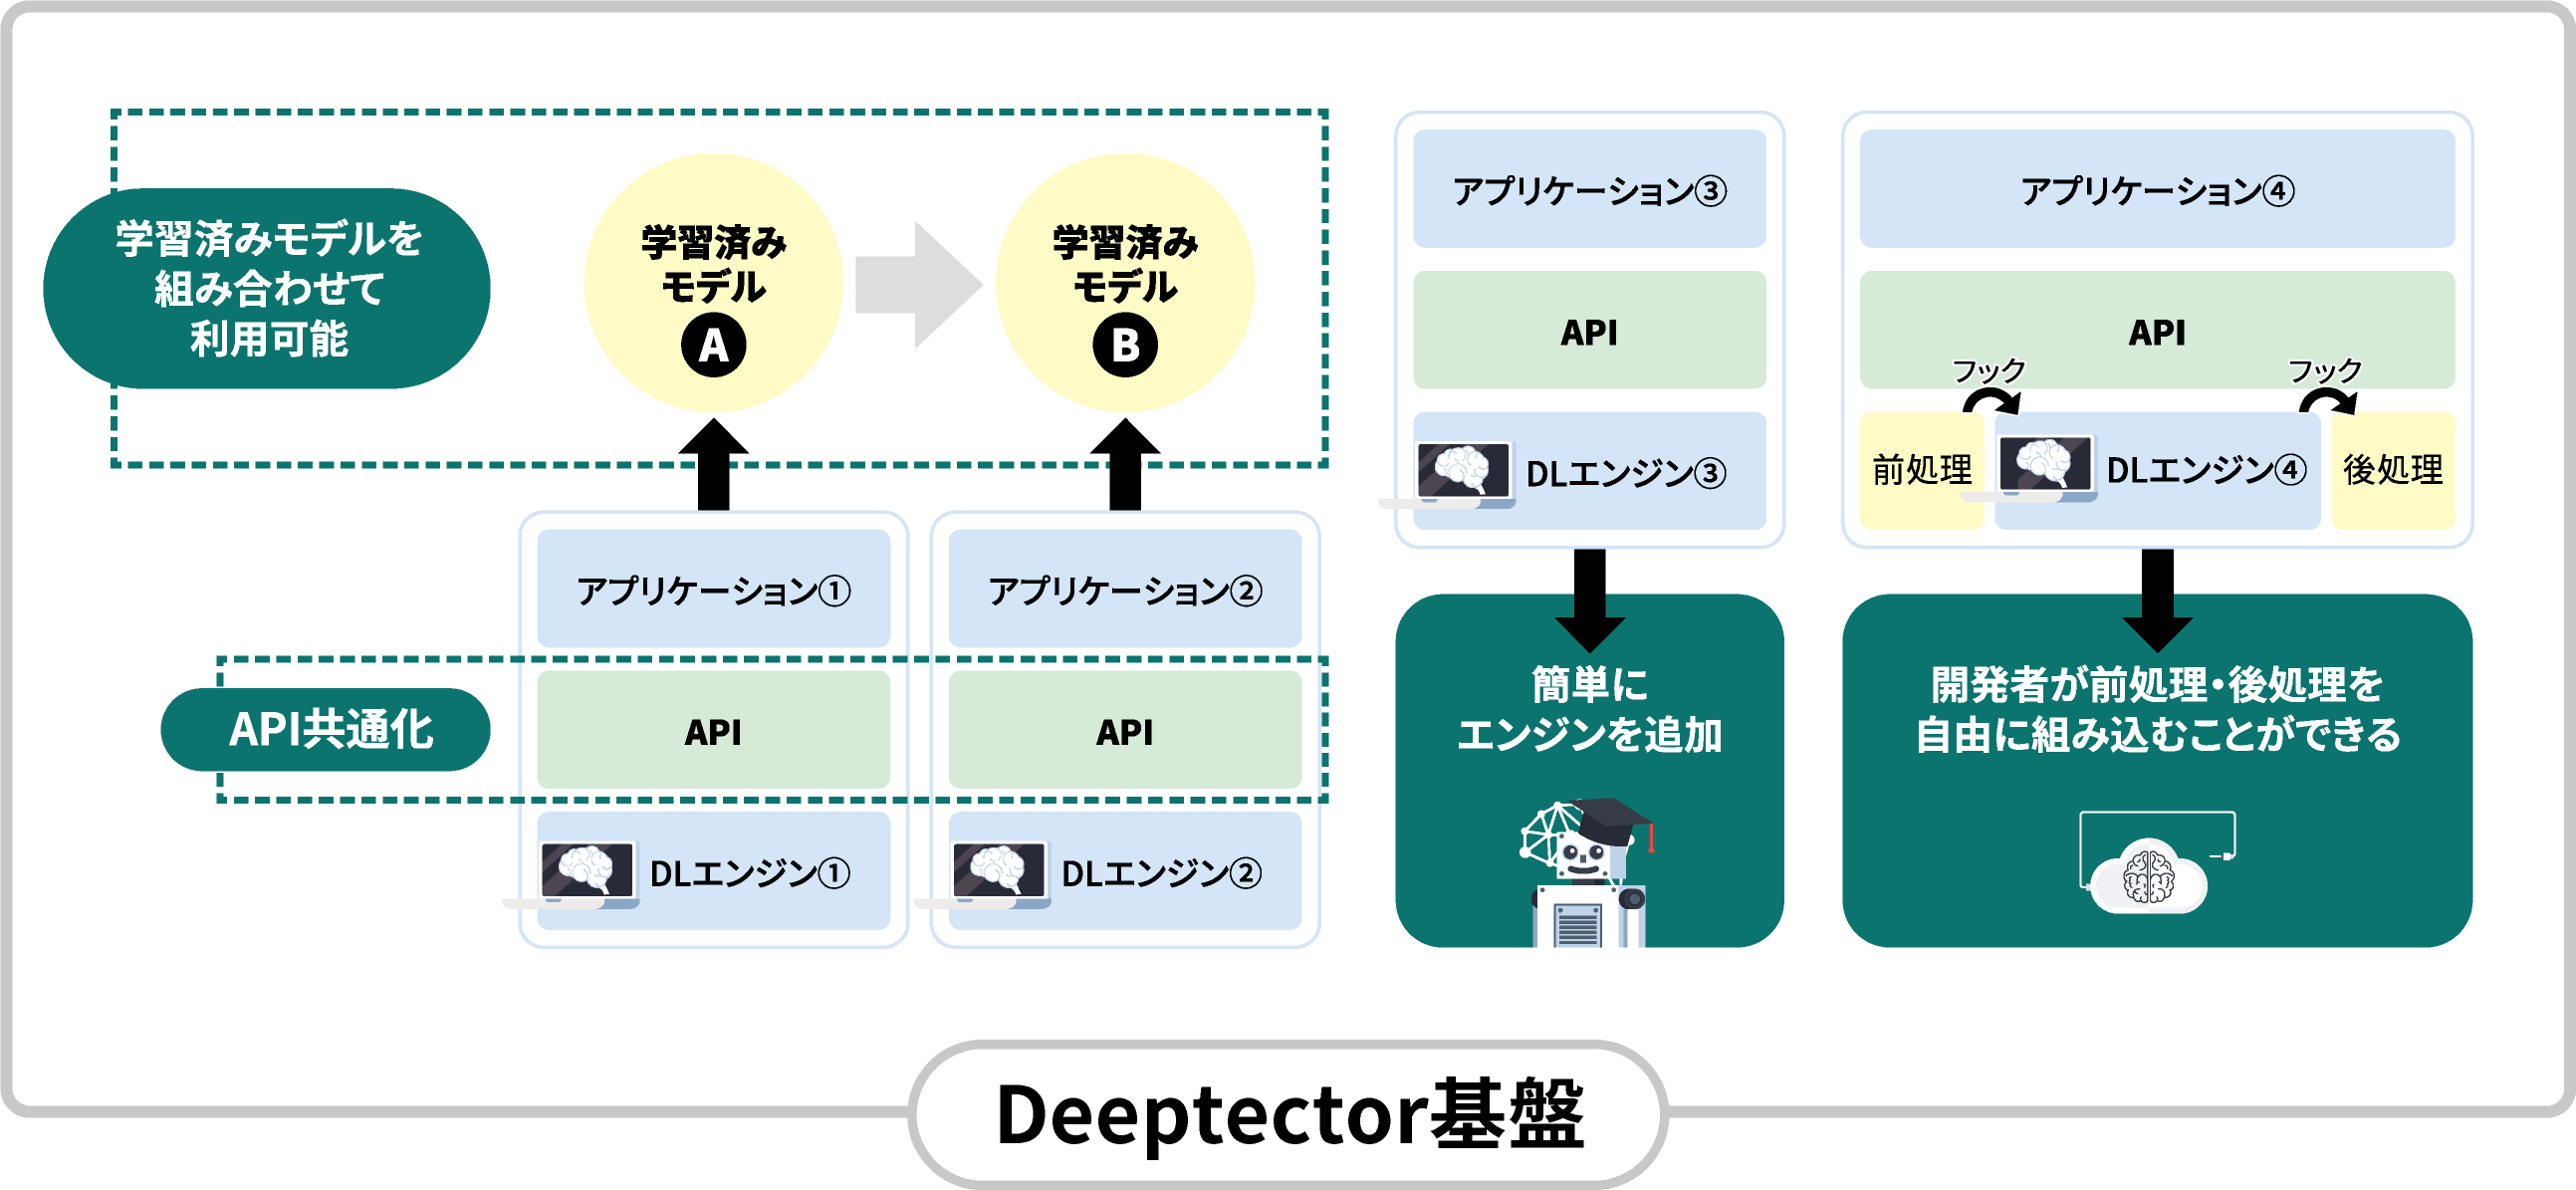 Deeptector